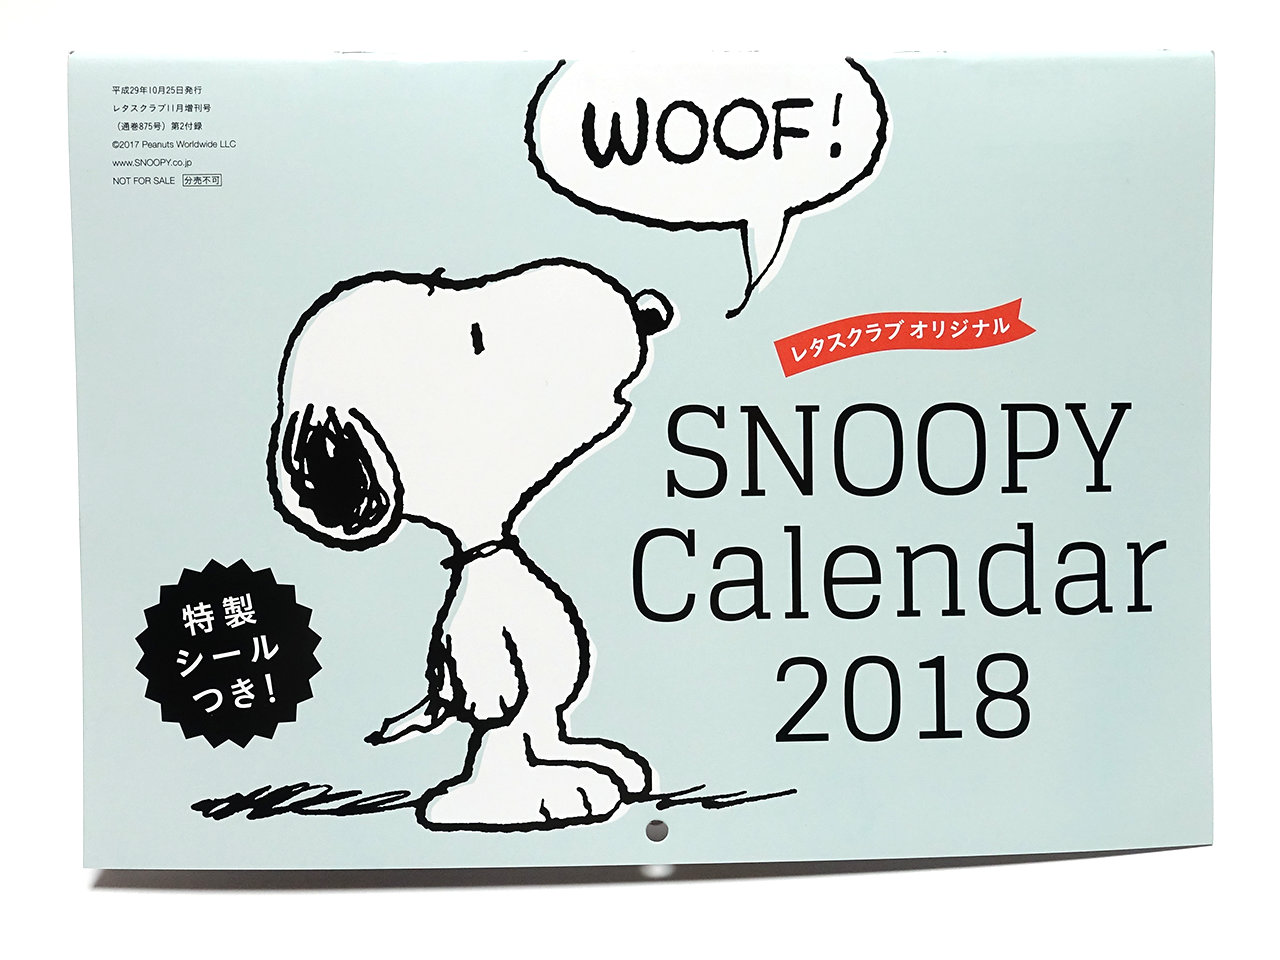 レタスクラブ 17 11月増刊号 Snoopyカレンダー18 窓辺のスヌーピー